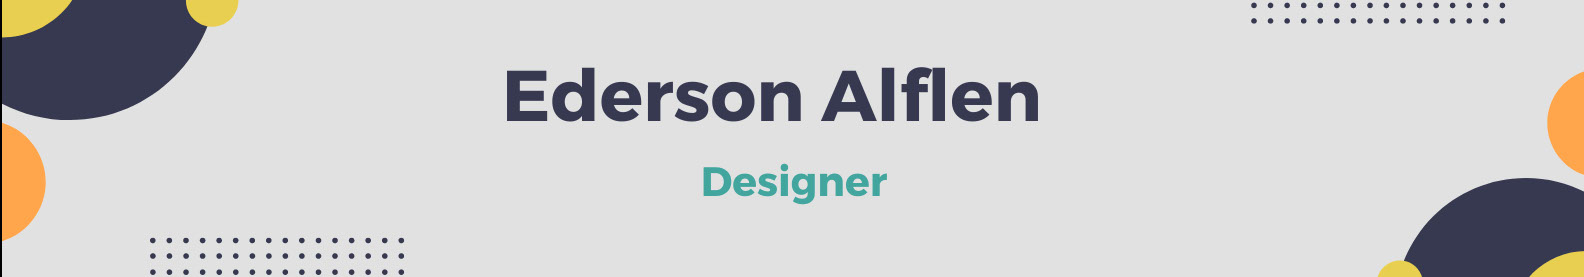 Ederson Alflen's profile banner